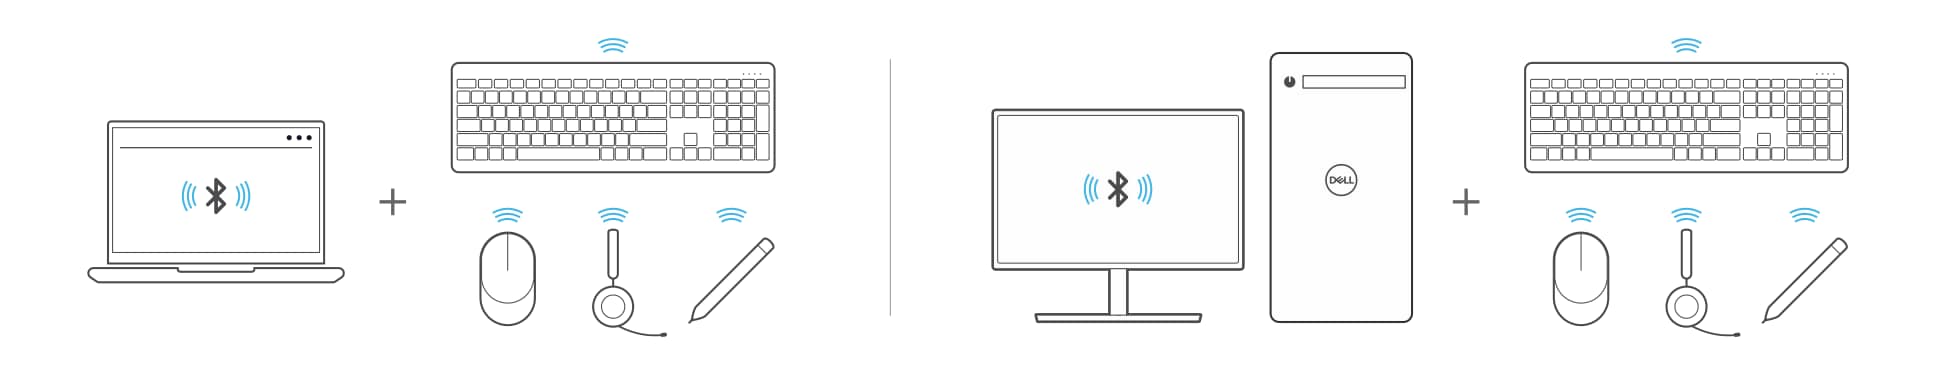 Emparejar portátiles y equipos de sobremesa con dispositivos Bluetooth, como teclados, ratones, auriculares o un lápiz